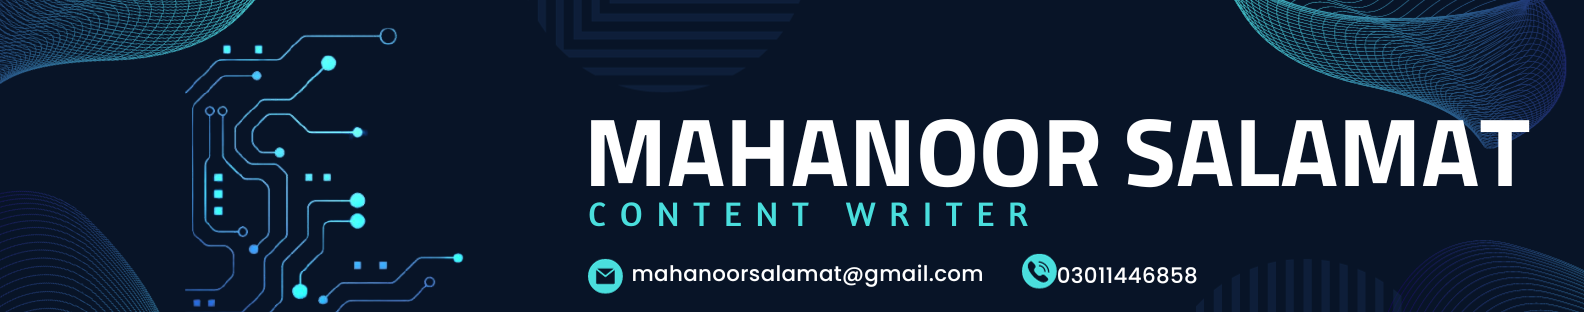 Mahanoor Salamat's profile banner